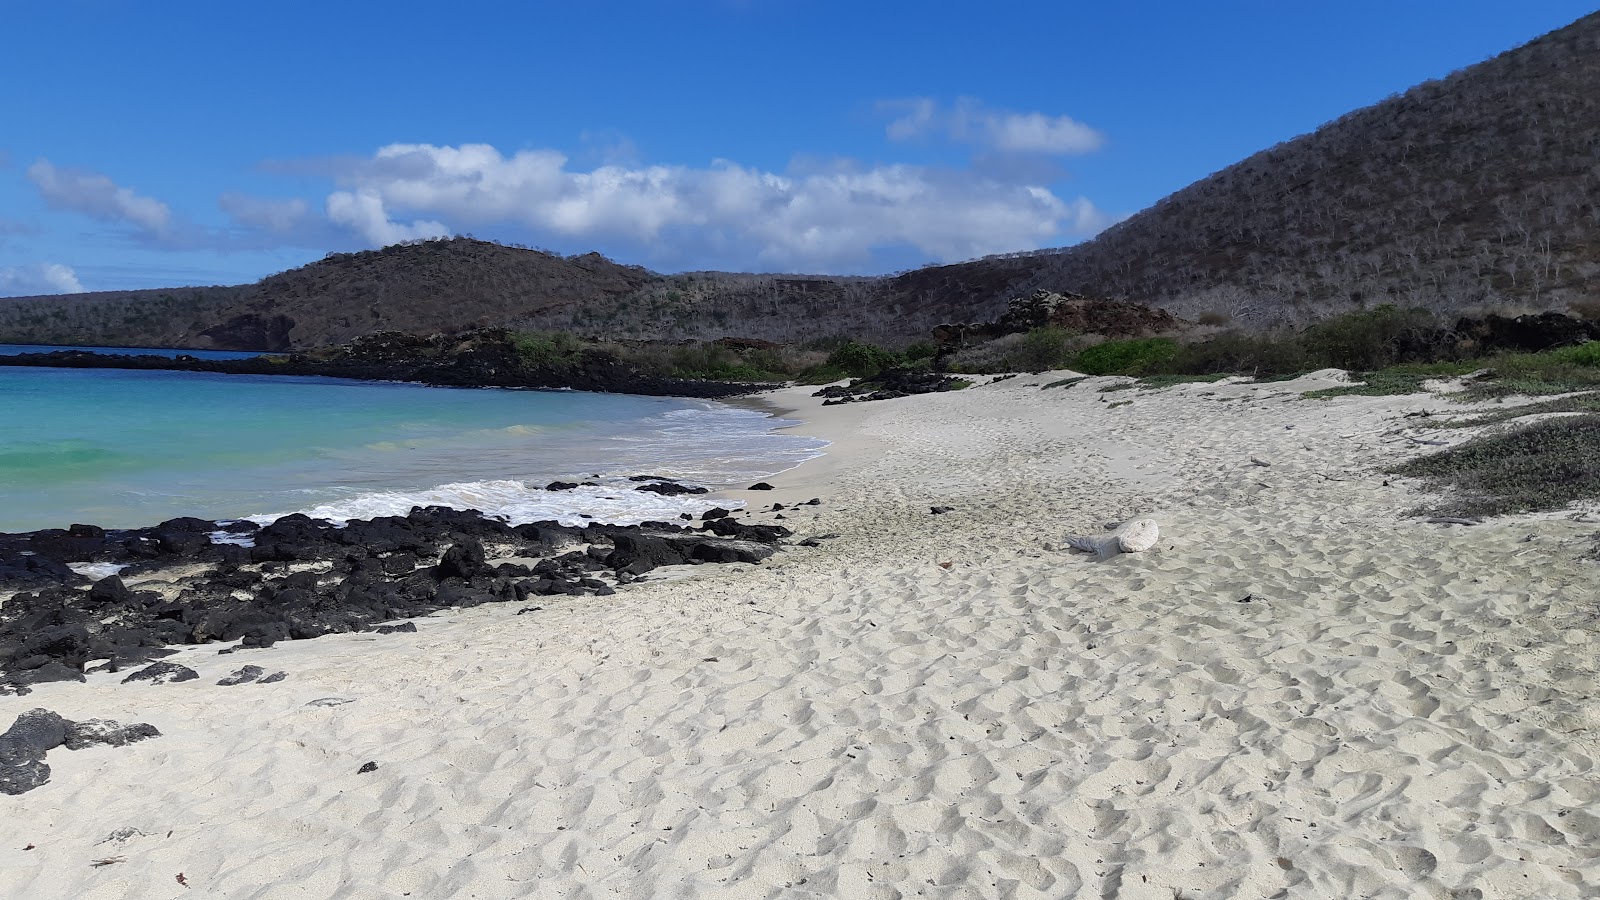 Punta Cormorant'in fotoğrafı geniş plaj ile birlikte